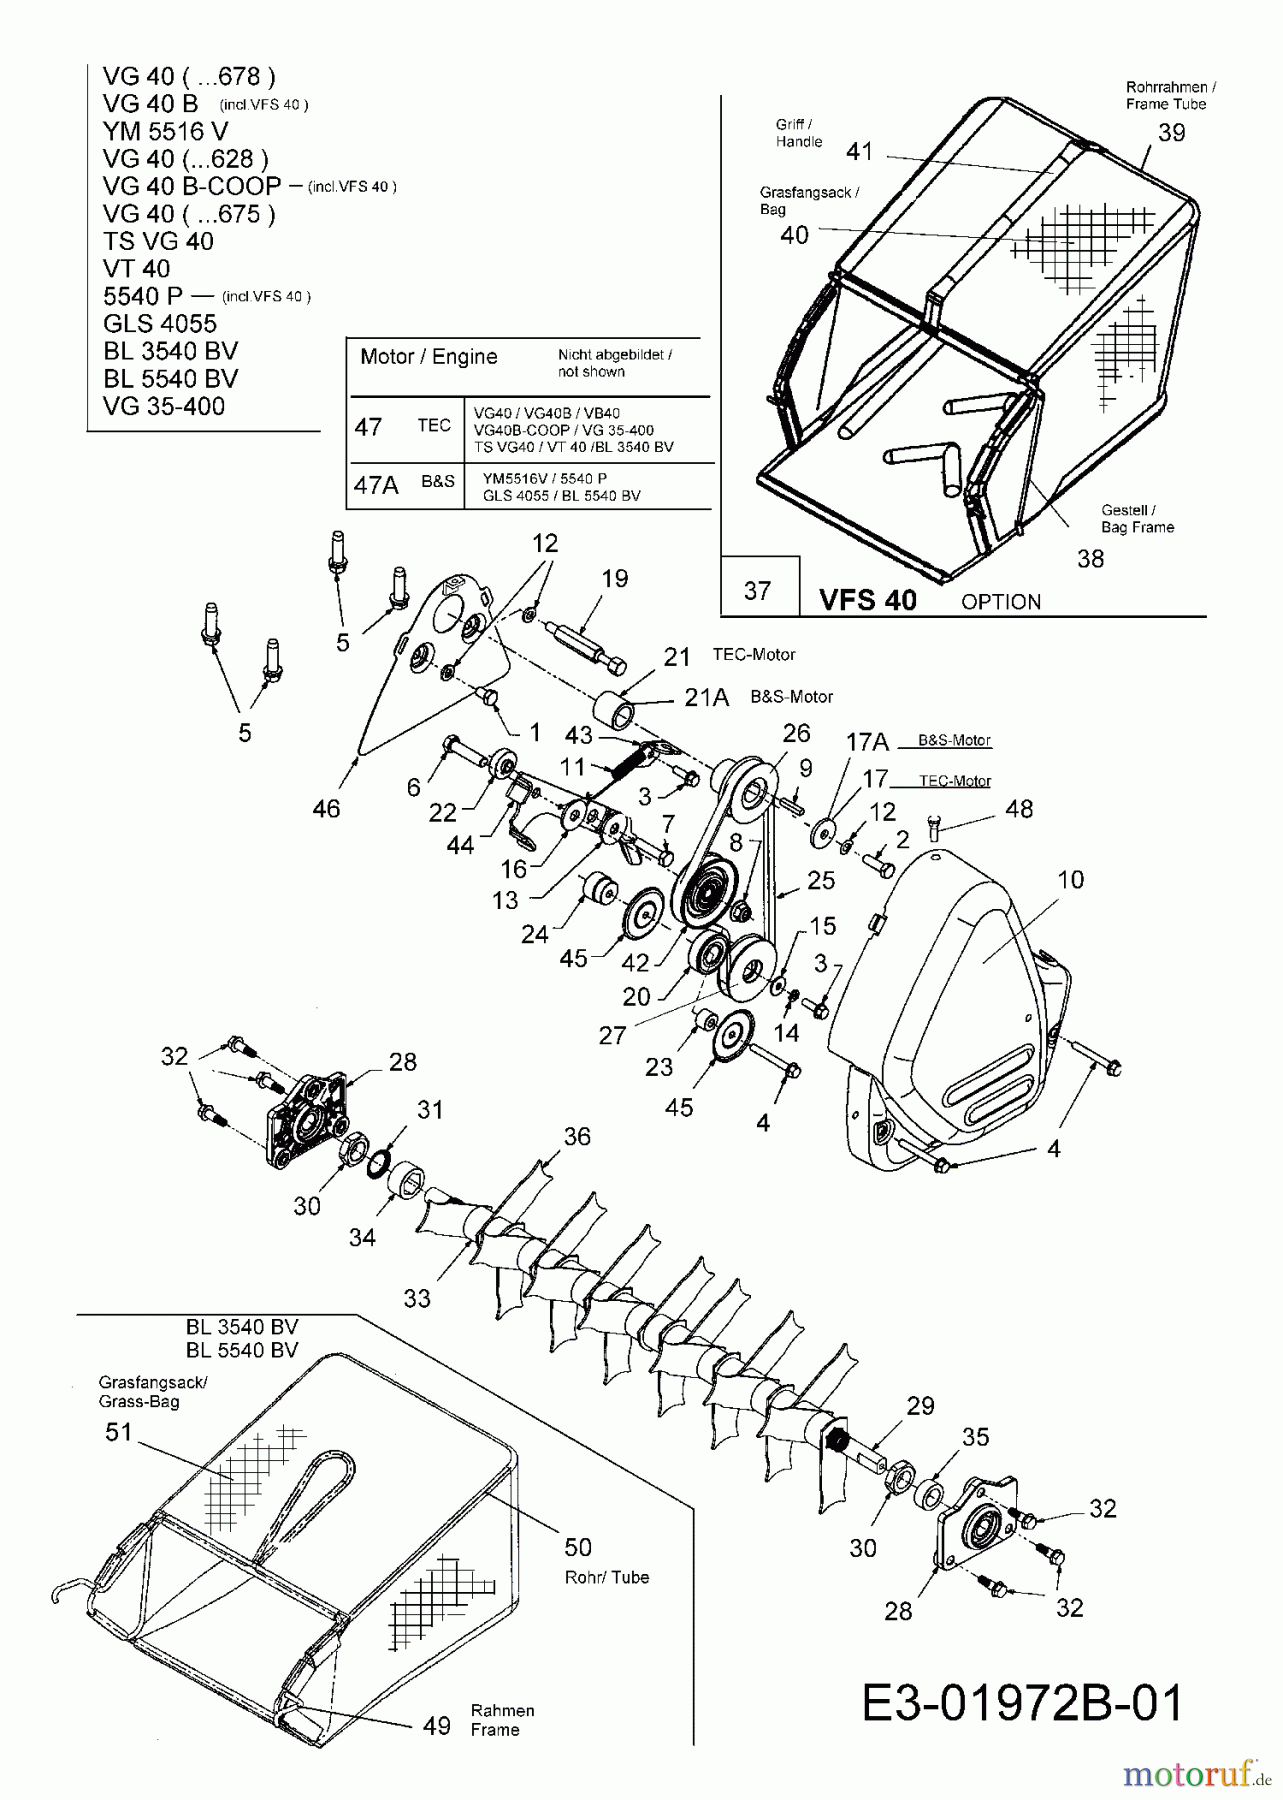  Dehner Motorvertikutierer VG 40 16BG5A3A675  (2006) Fangsack, Keilriemen, Messerwalze